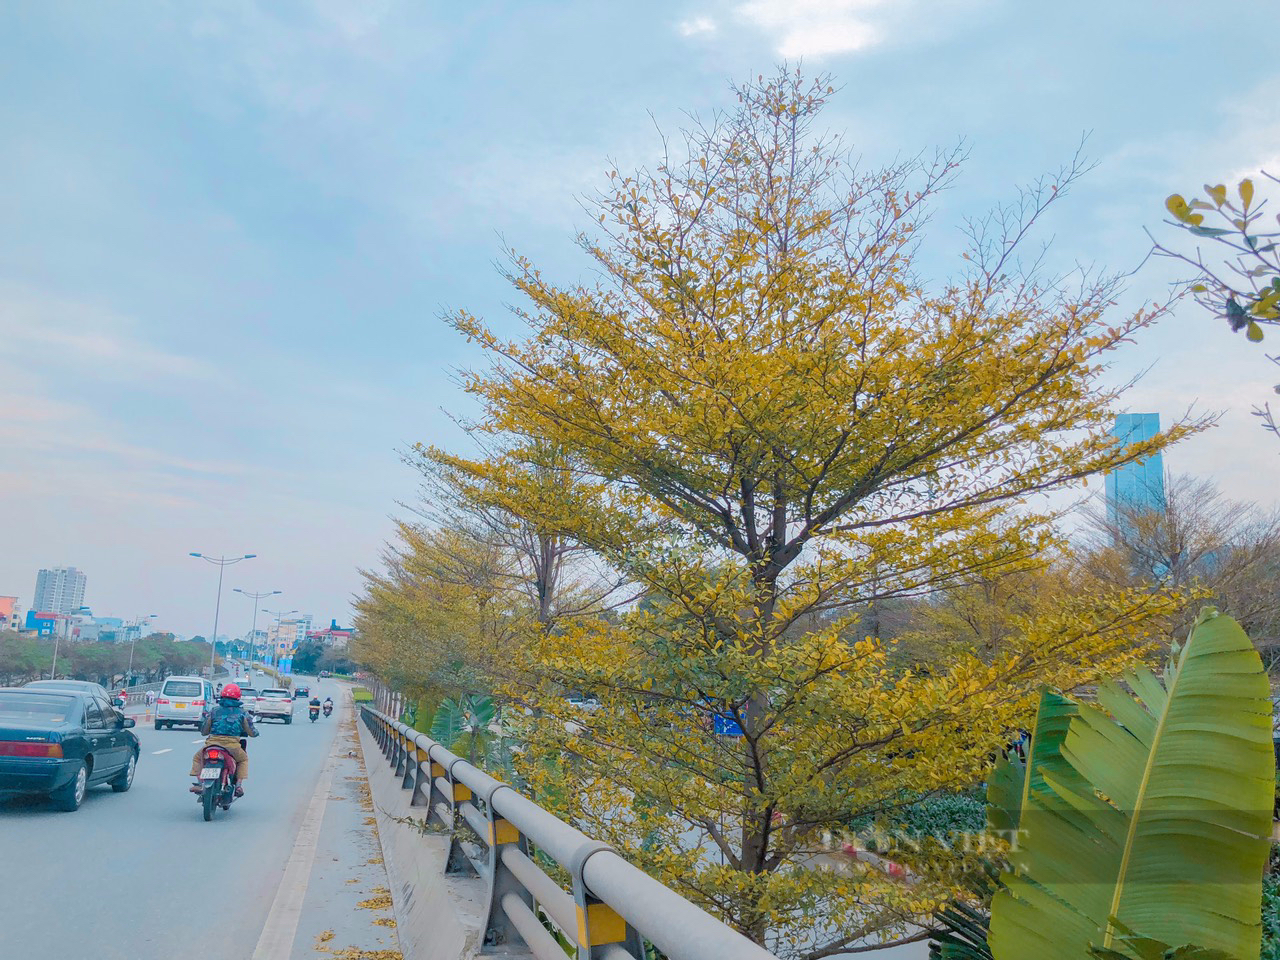 Ngỡ ngàng trước vẻ đẹp của cây bàng lá nhỏ trên phố Hà Nội - Ảnh 3.